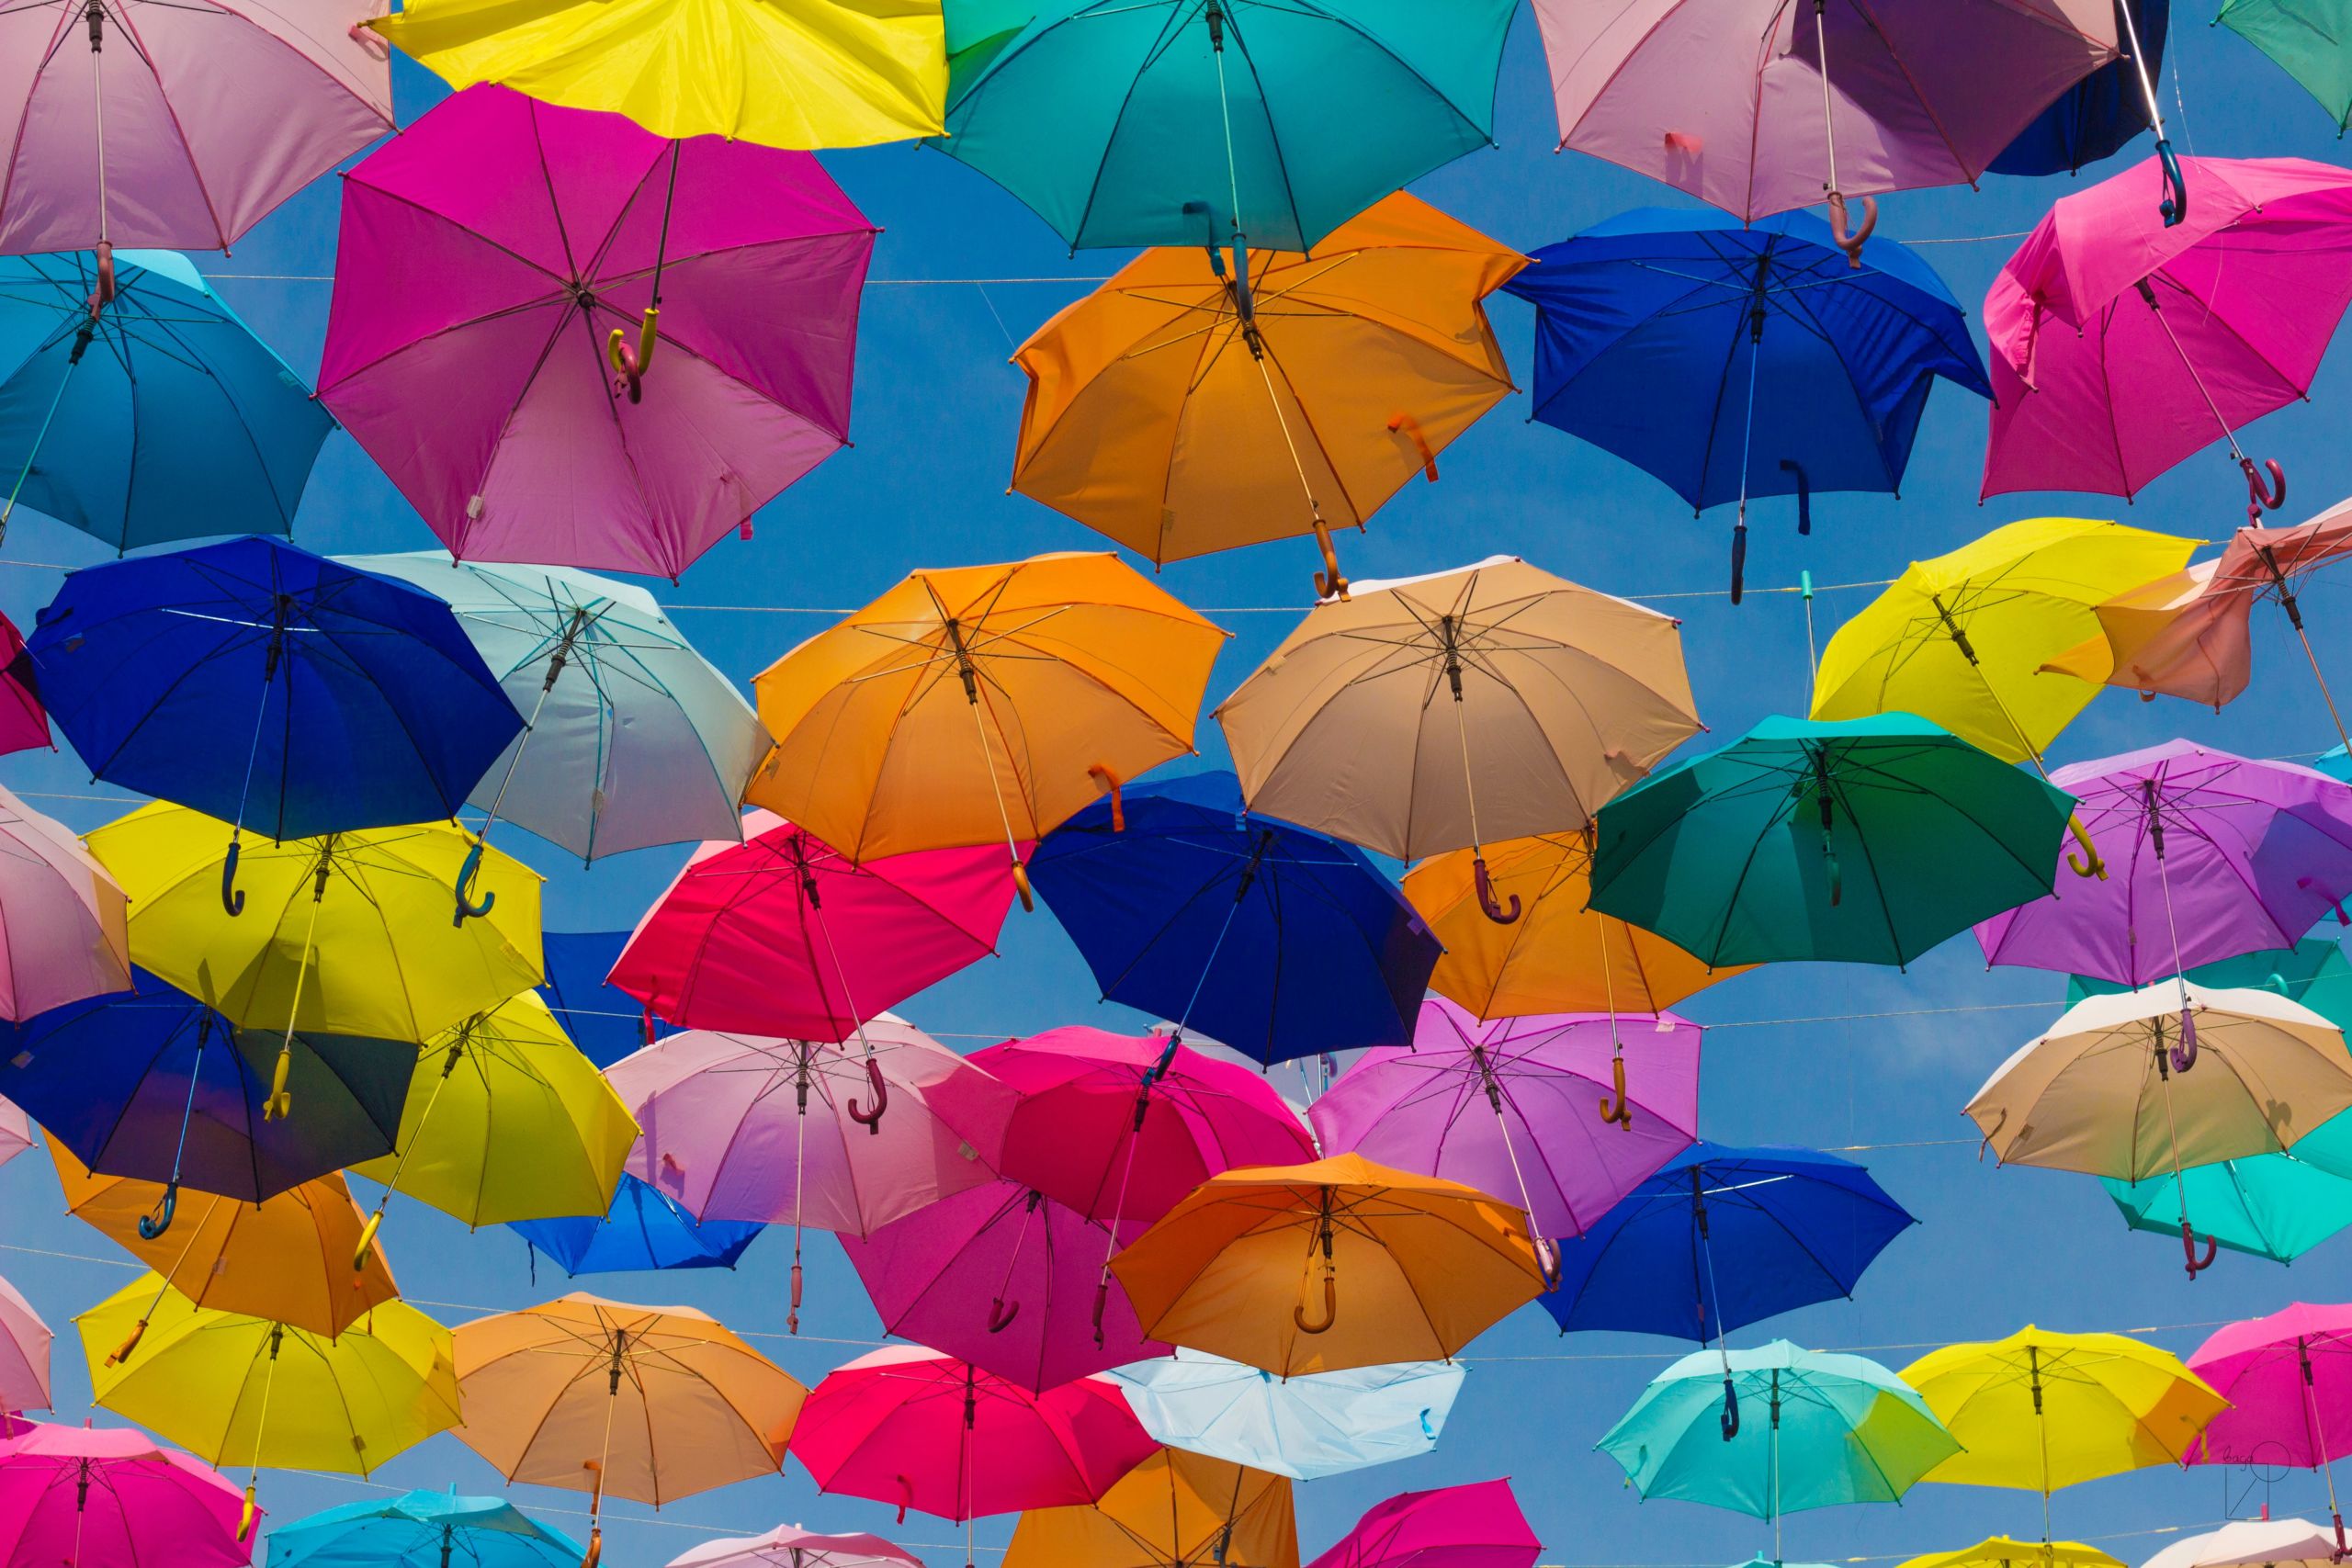 assorted umbrellas